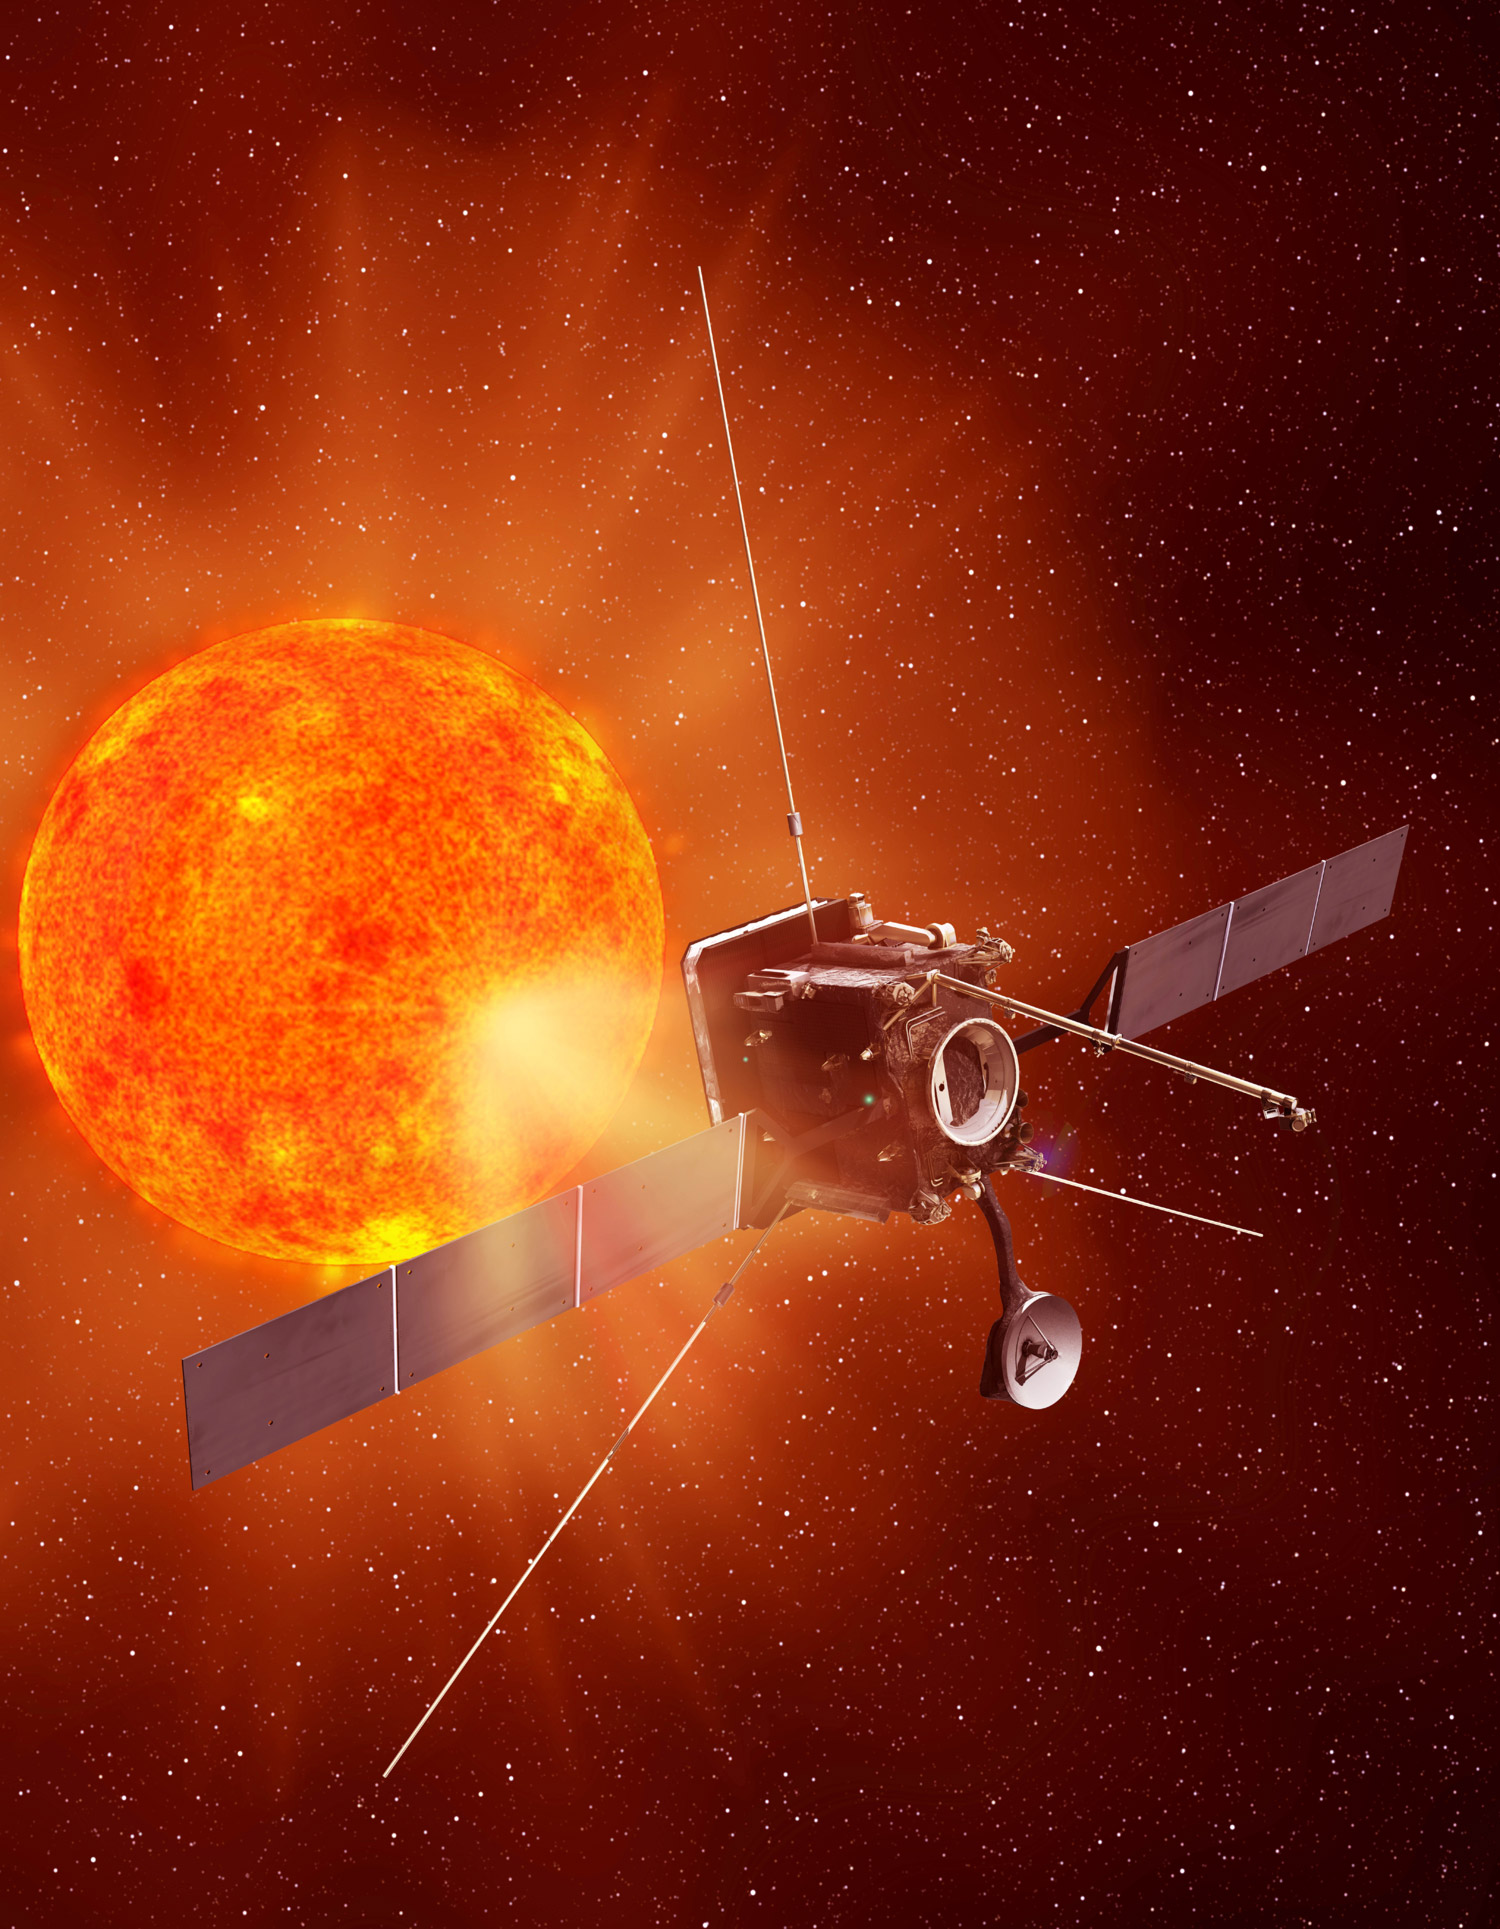 En s'approchant au plus près du Soleil, la sonde Solar Orbiter devrait apporter de nouveaux éclairages sur les interactions du Soleil avec son environnement, ainsi que sur les mécanismes de formation du vent solaire dans lequel les planètes évoluent. © Astrium/Esa